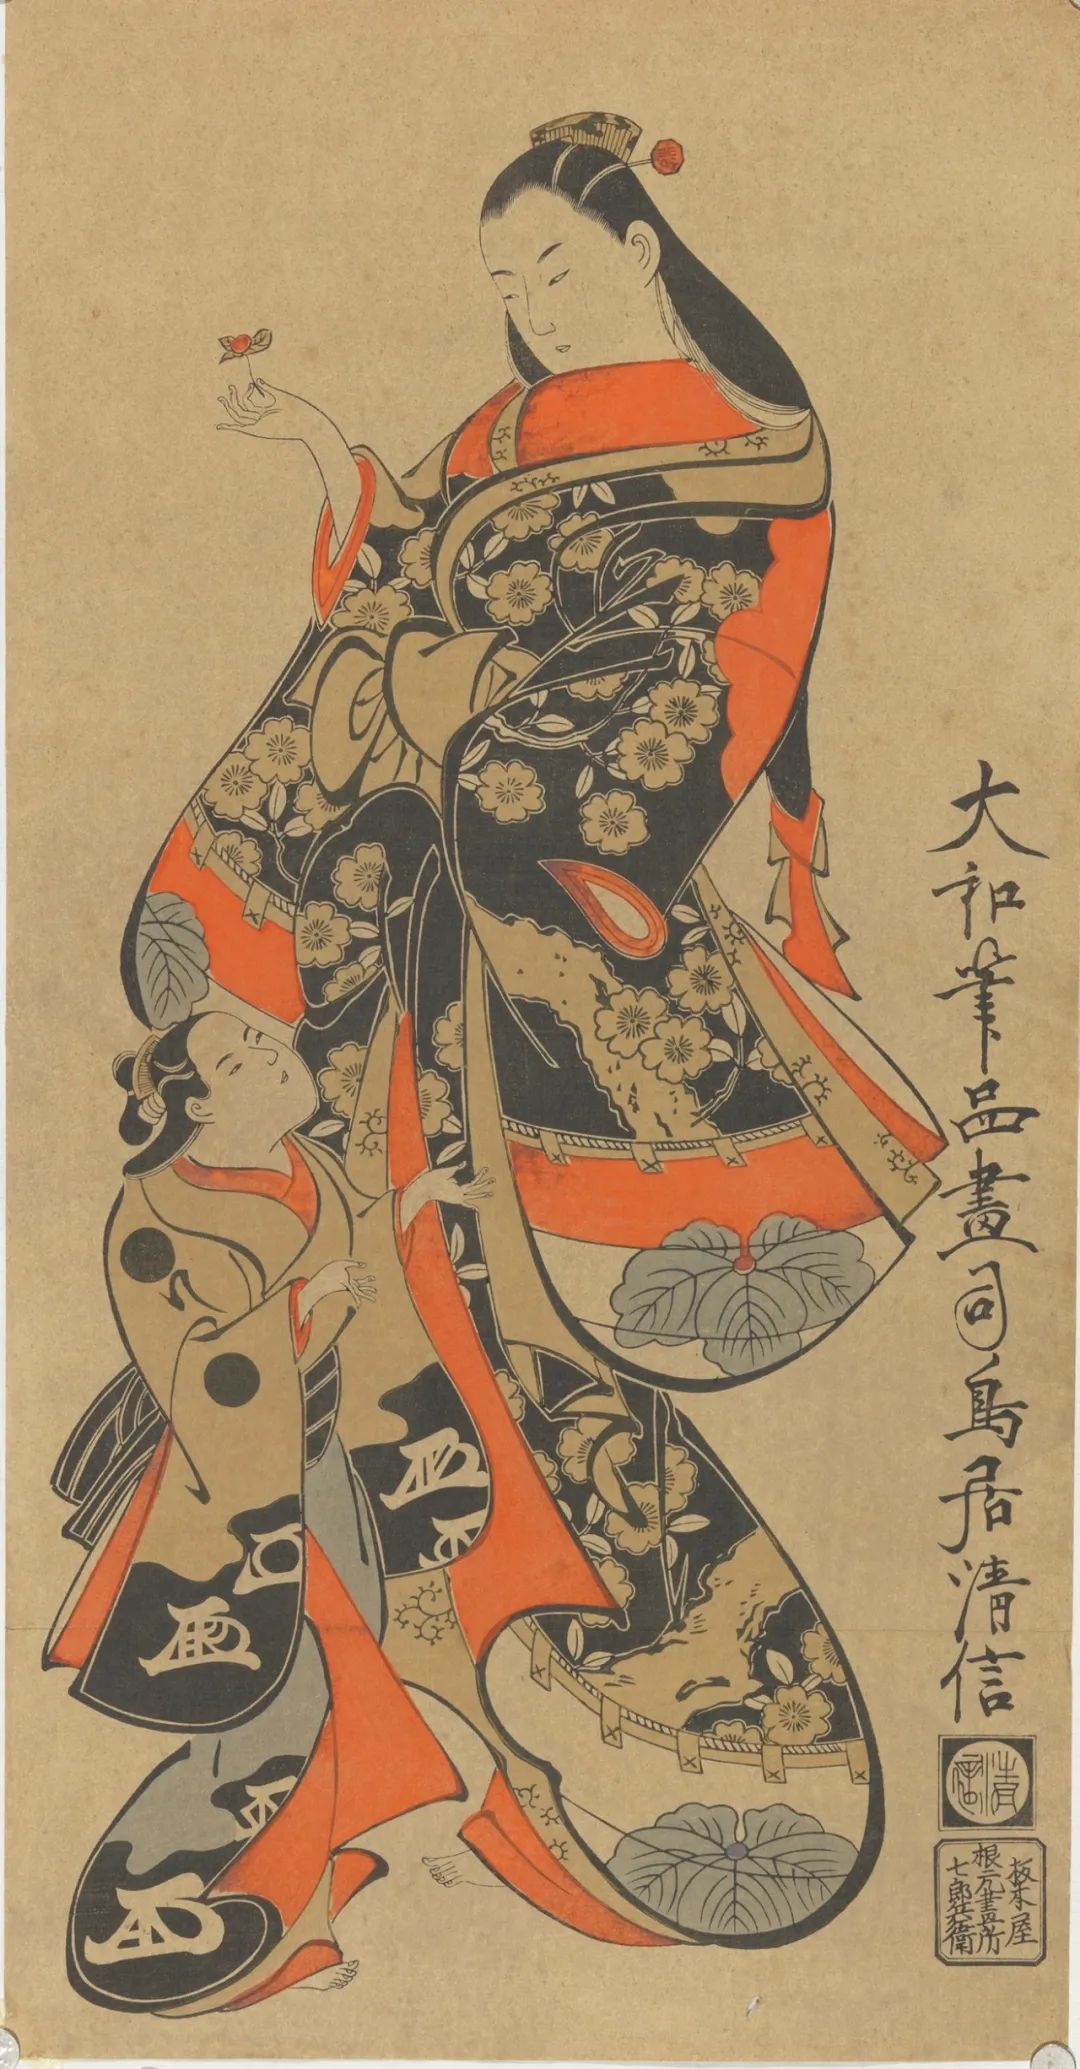 鸟居清信《妇人与少年》 纸本 51.5×27cm 18世纪初期 中国美术馆藏